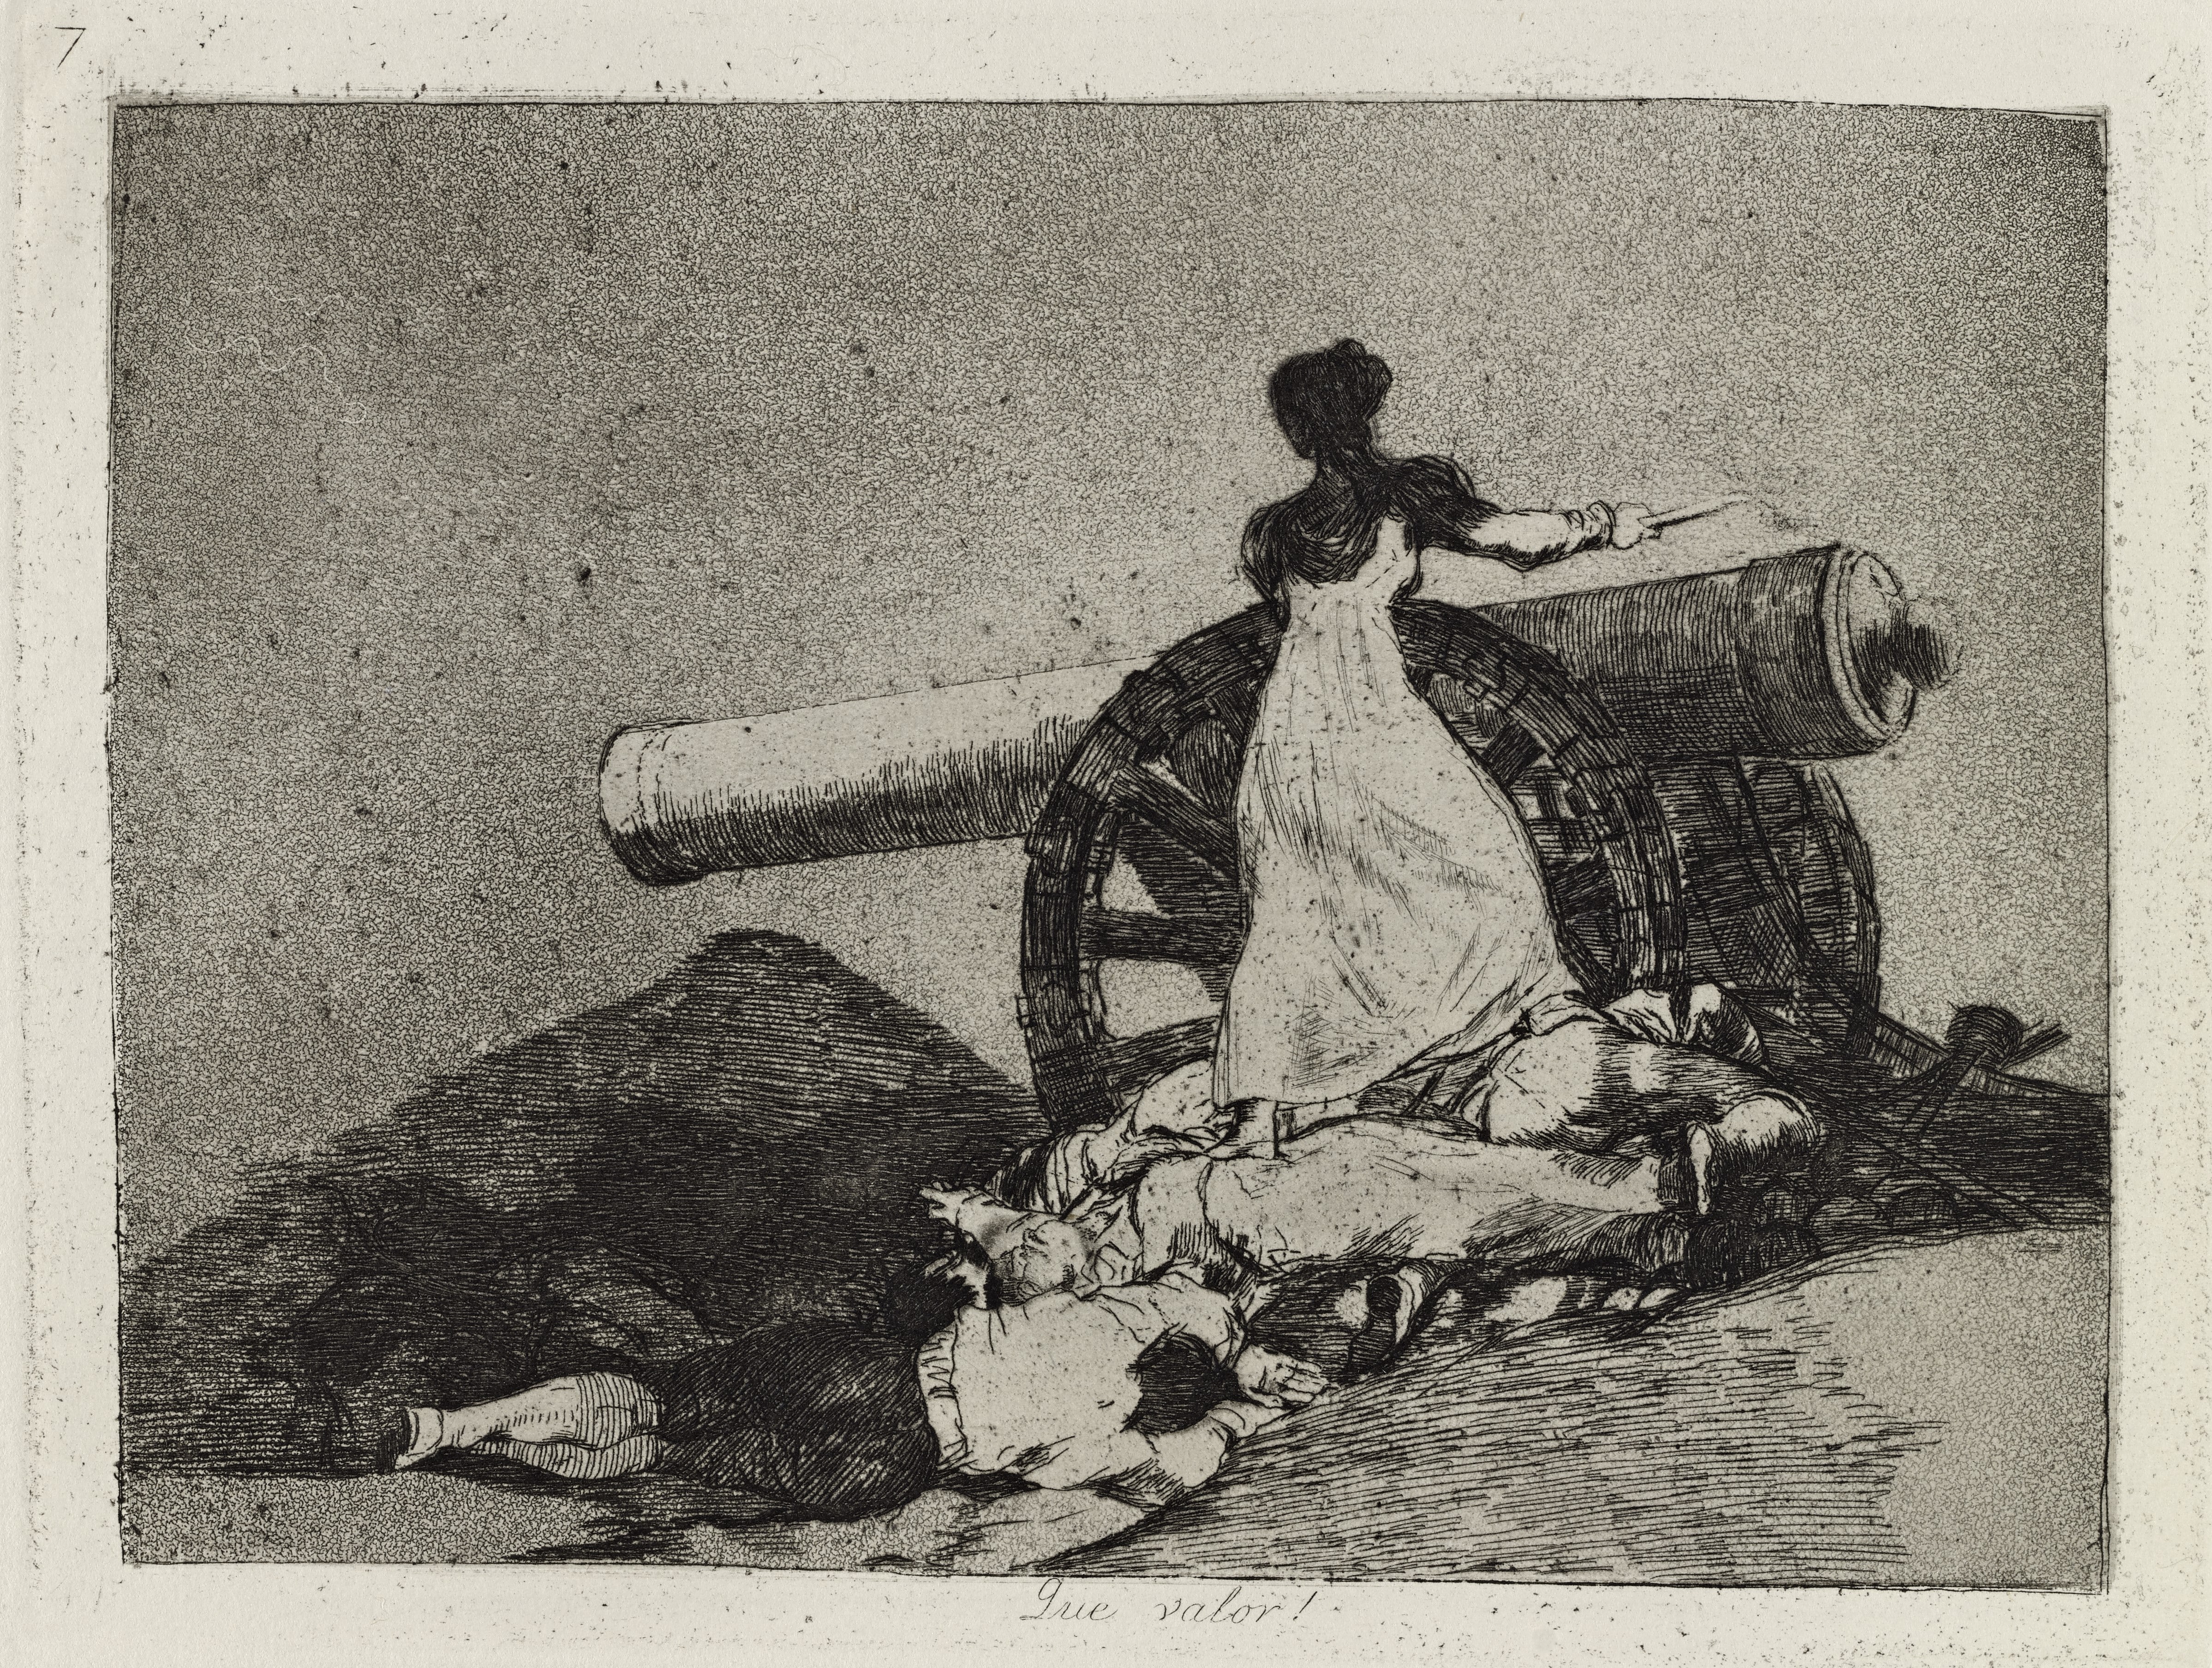 Te invitamos a asistir a la Exposición Desastres de la guerra de Goya